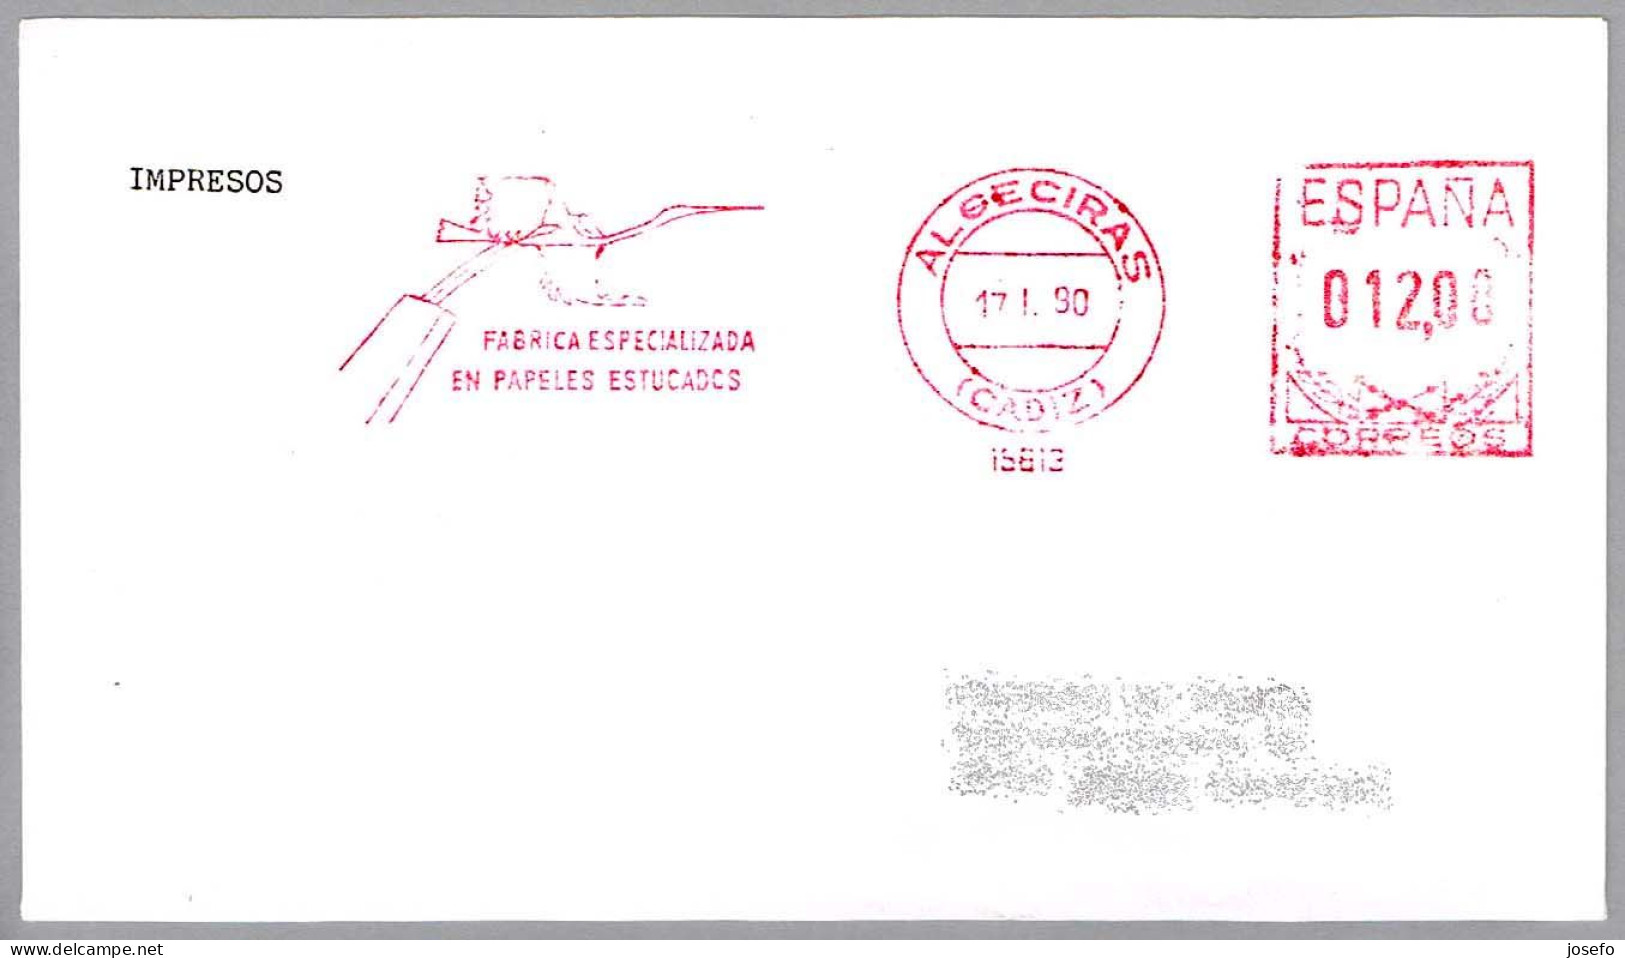 Fabrica Especializada En Papeles Estucados - CIGÜEÑA - STORK. Algeciras, Cadiz, Andalucia, 1990 - Mechanical Postmarks (Advertisement)